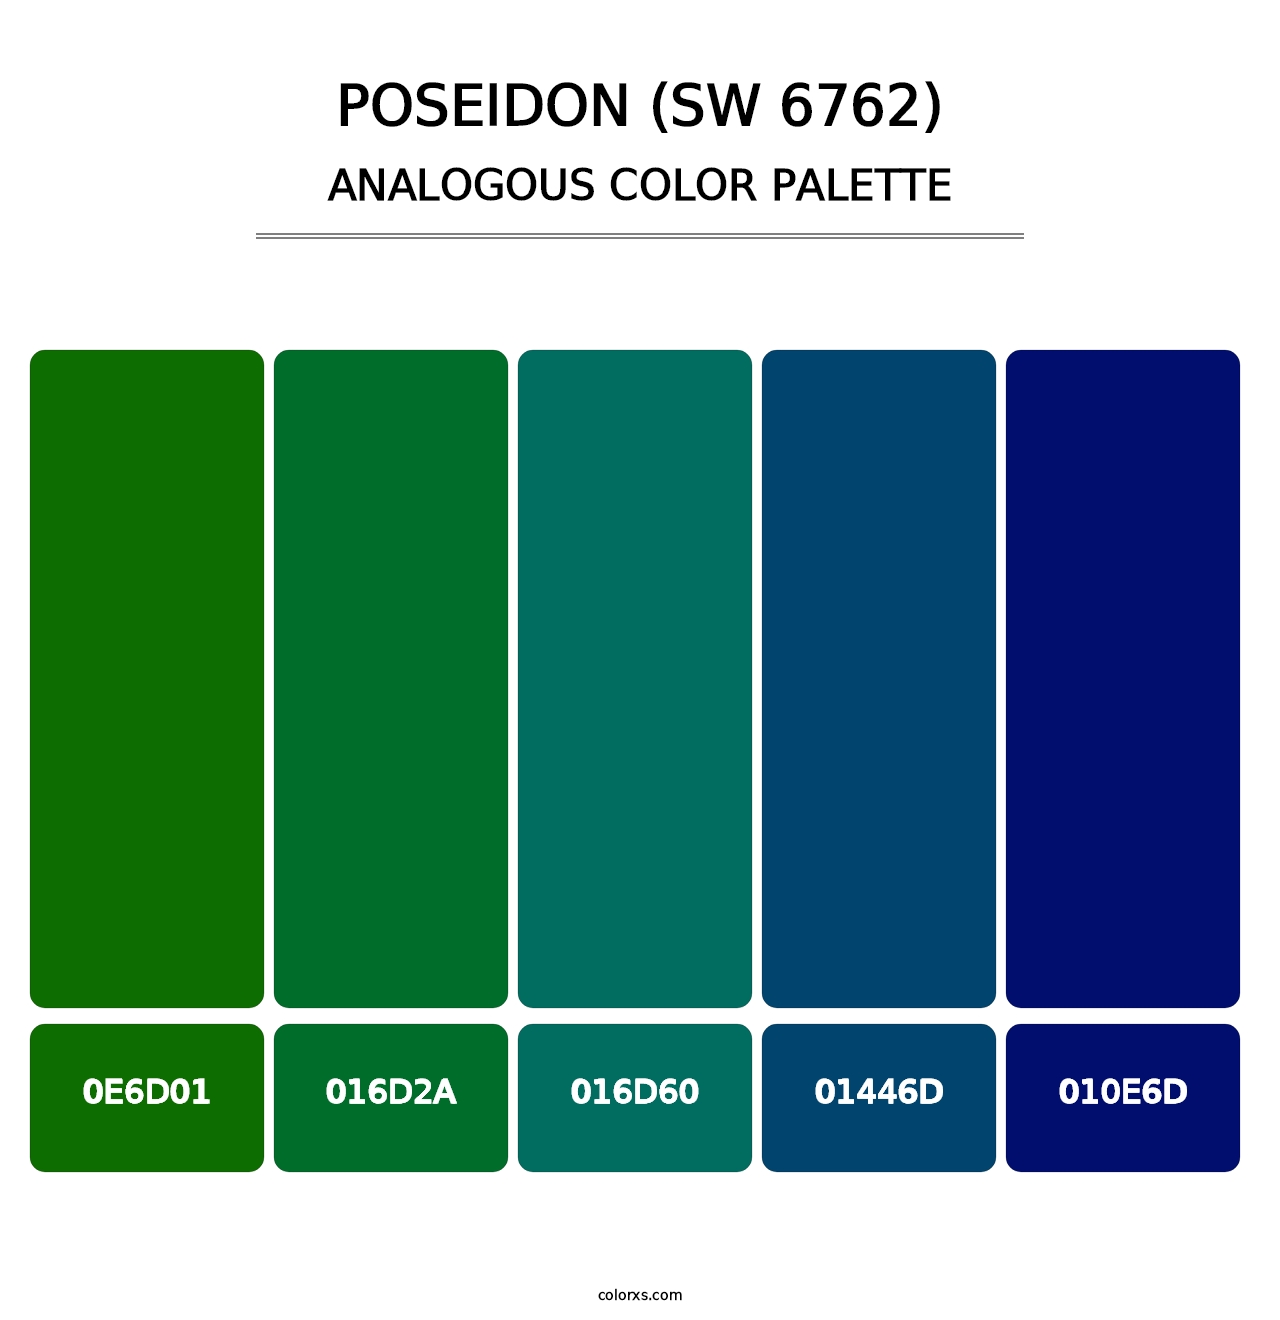 Poseidon (SW 6762) - Analogous Color Palette